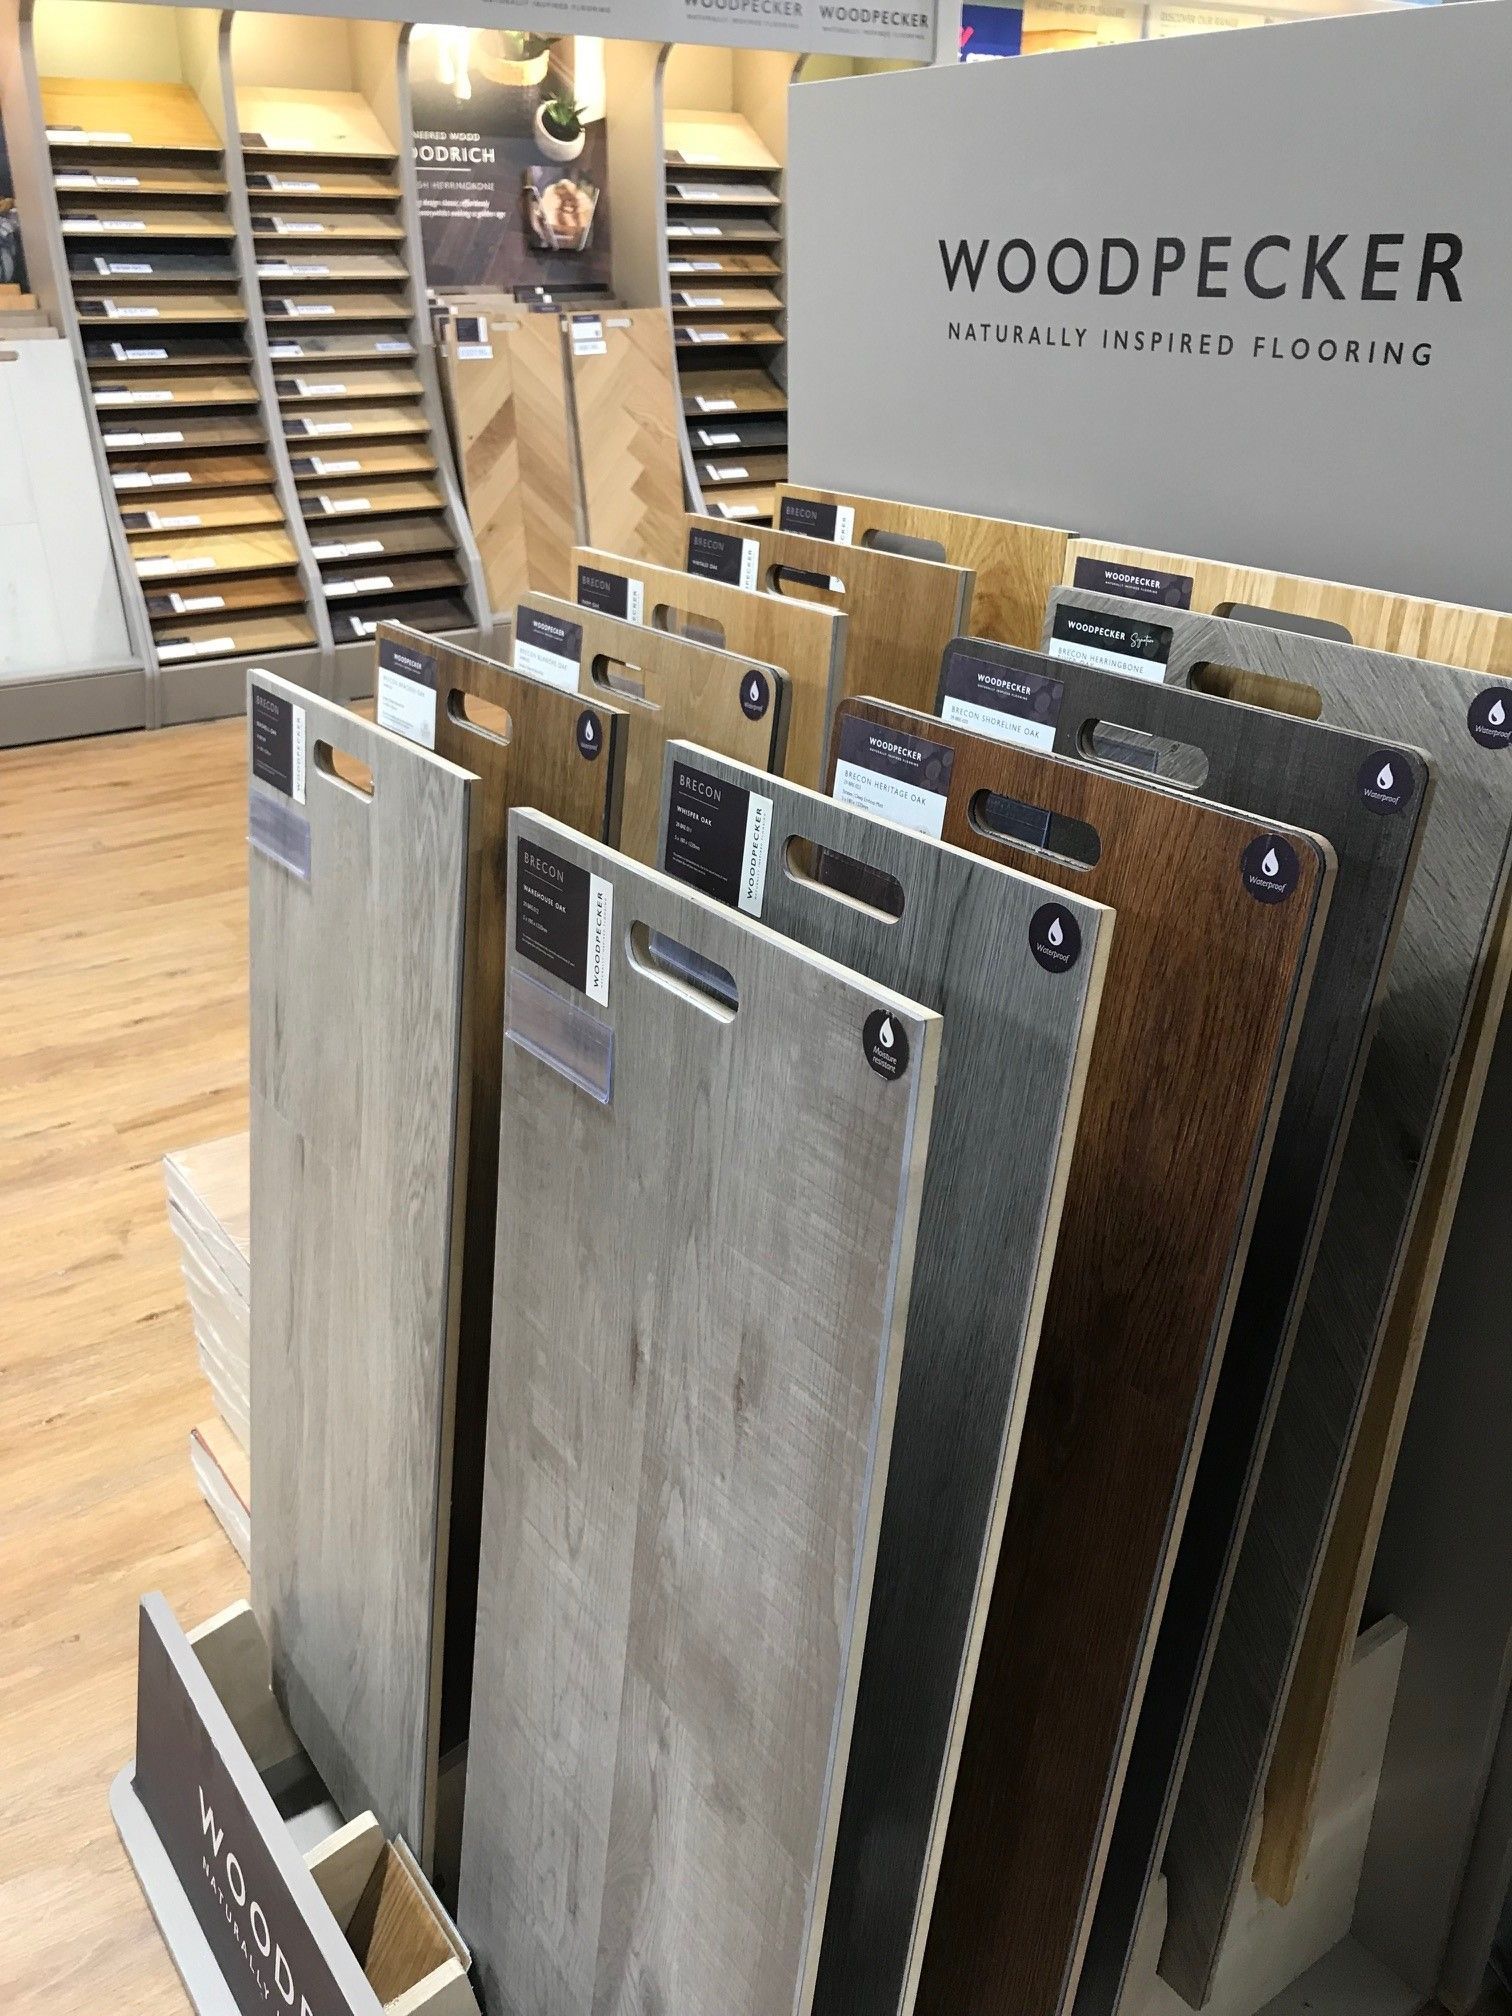 Woodpecker Flooring from CW Jones Flooring in Bristol